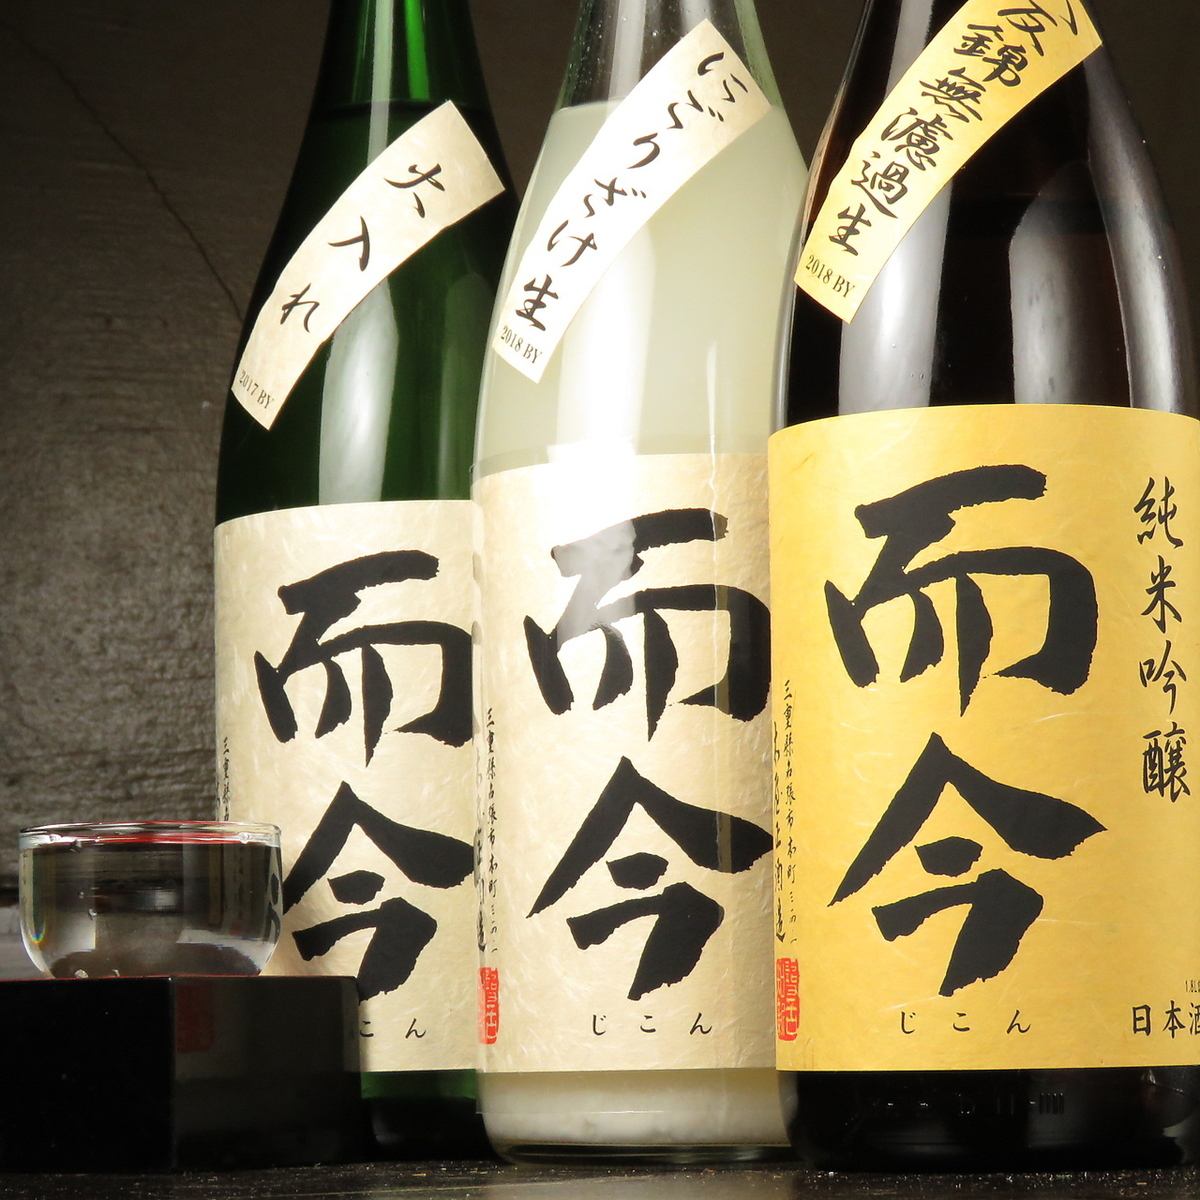 먼 곳에서 발길을 옮기는 사람도 많을 꼬치와 술의 유명한 상점.희귀 한 일본 술이나 소주가 충격의 가격으로 즐길 수있다!